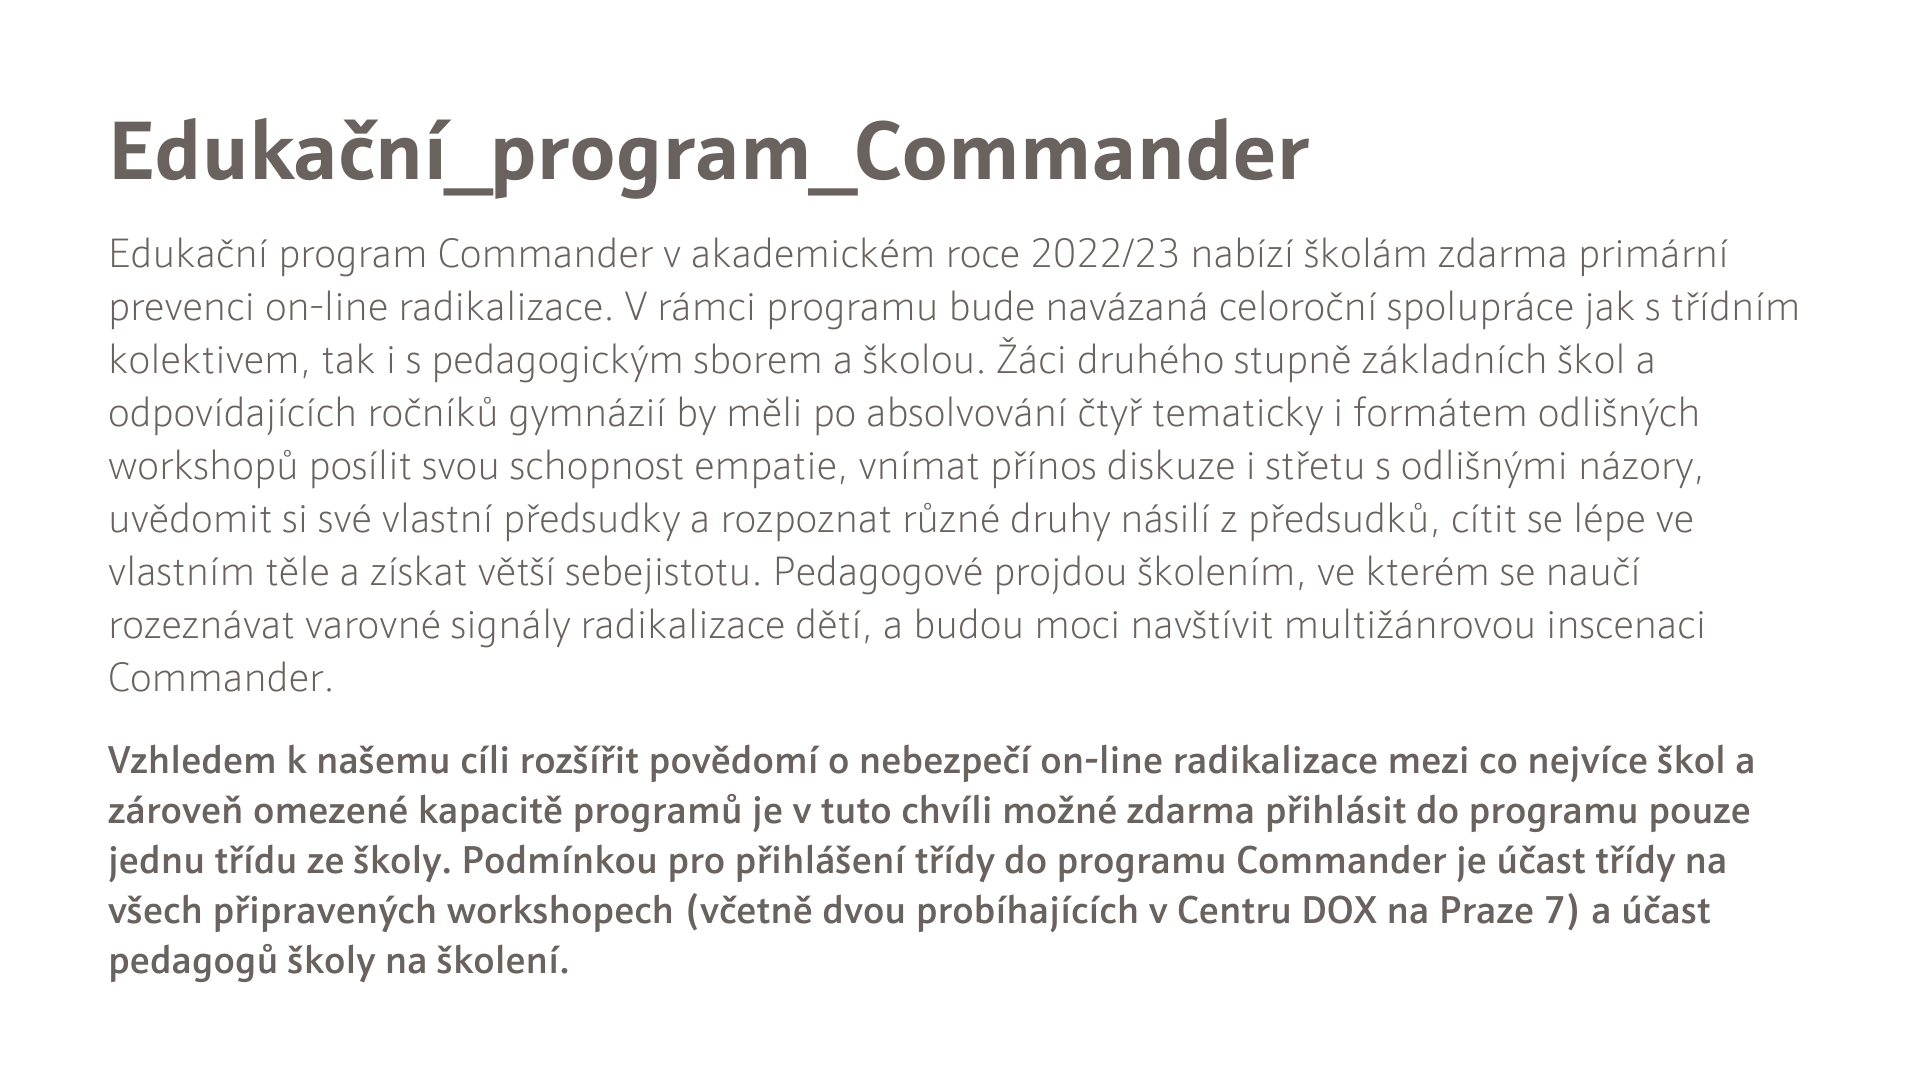 Commander edukační program 2